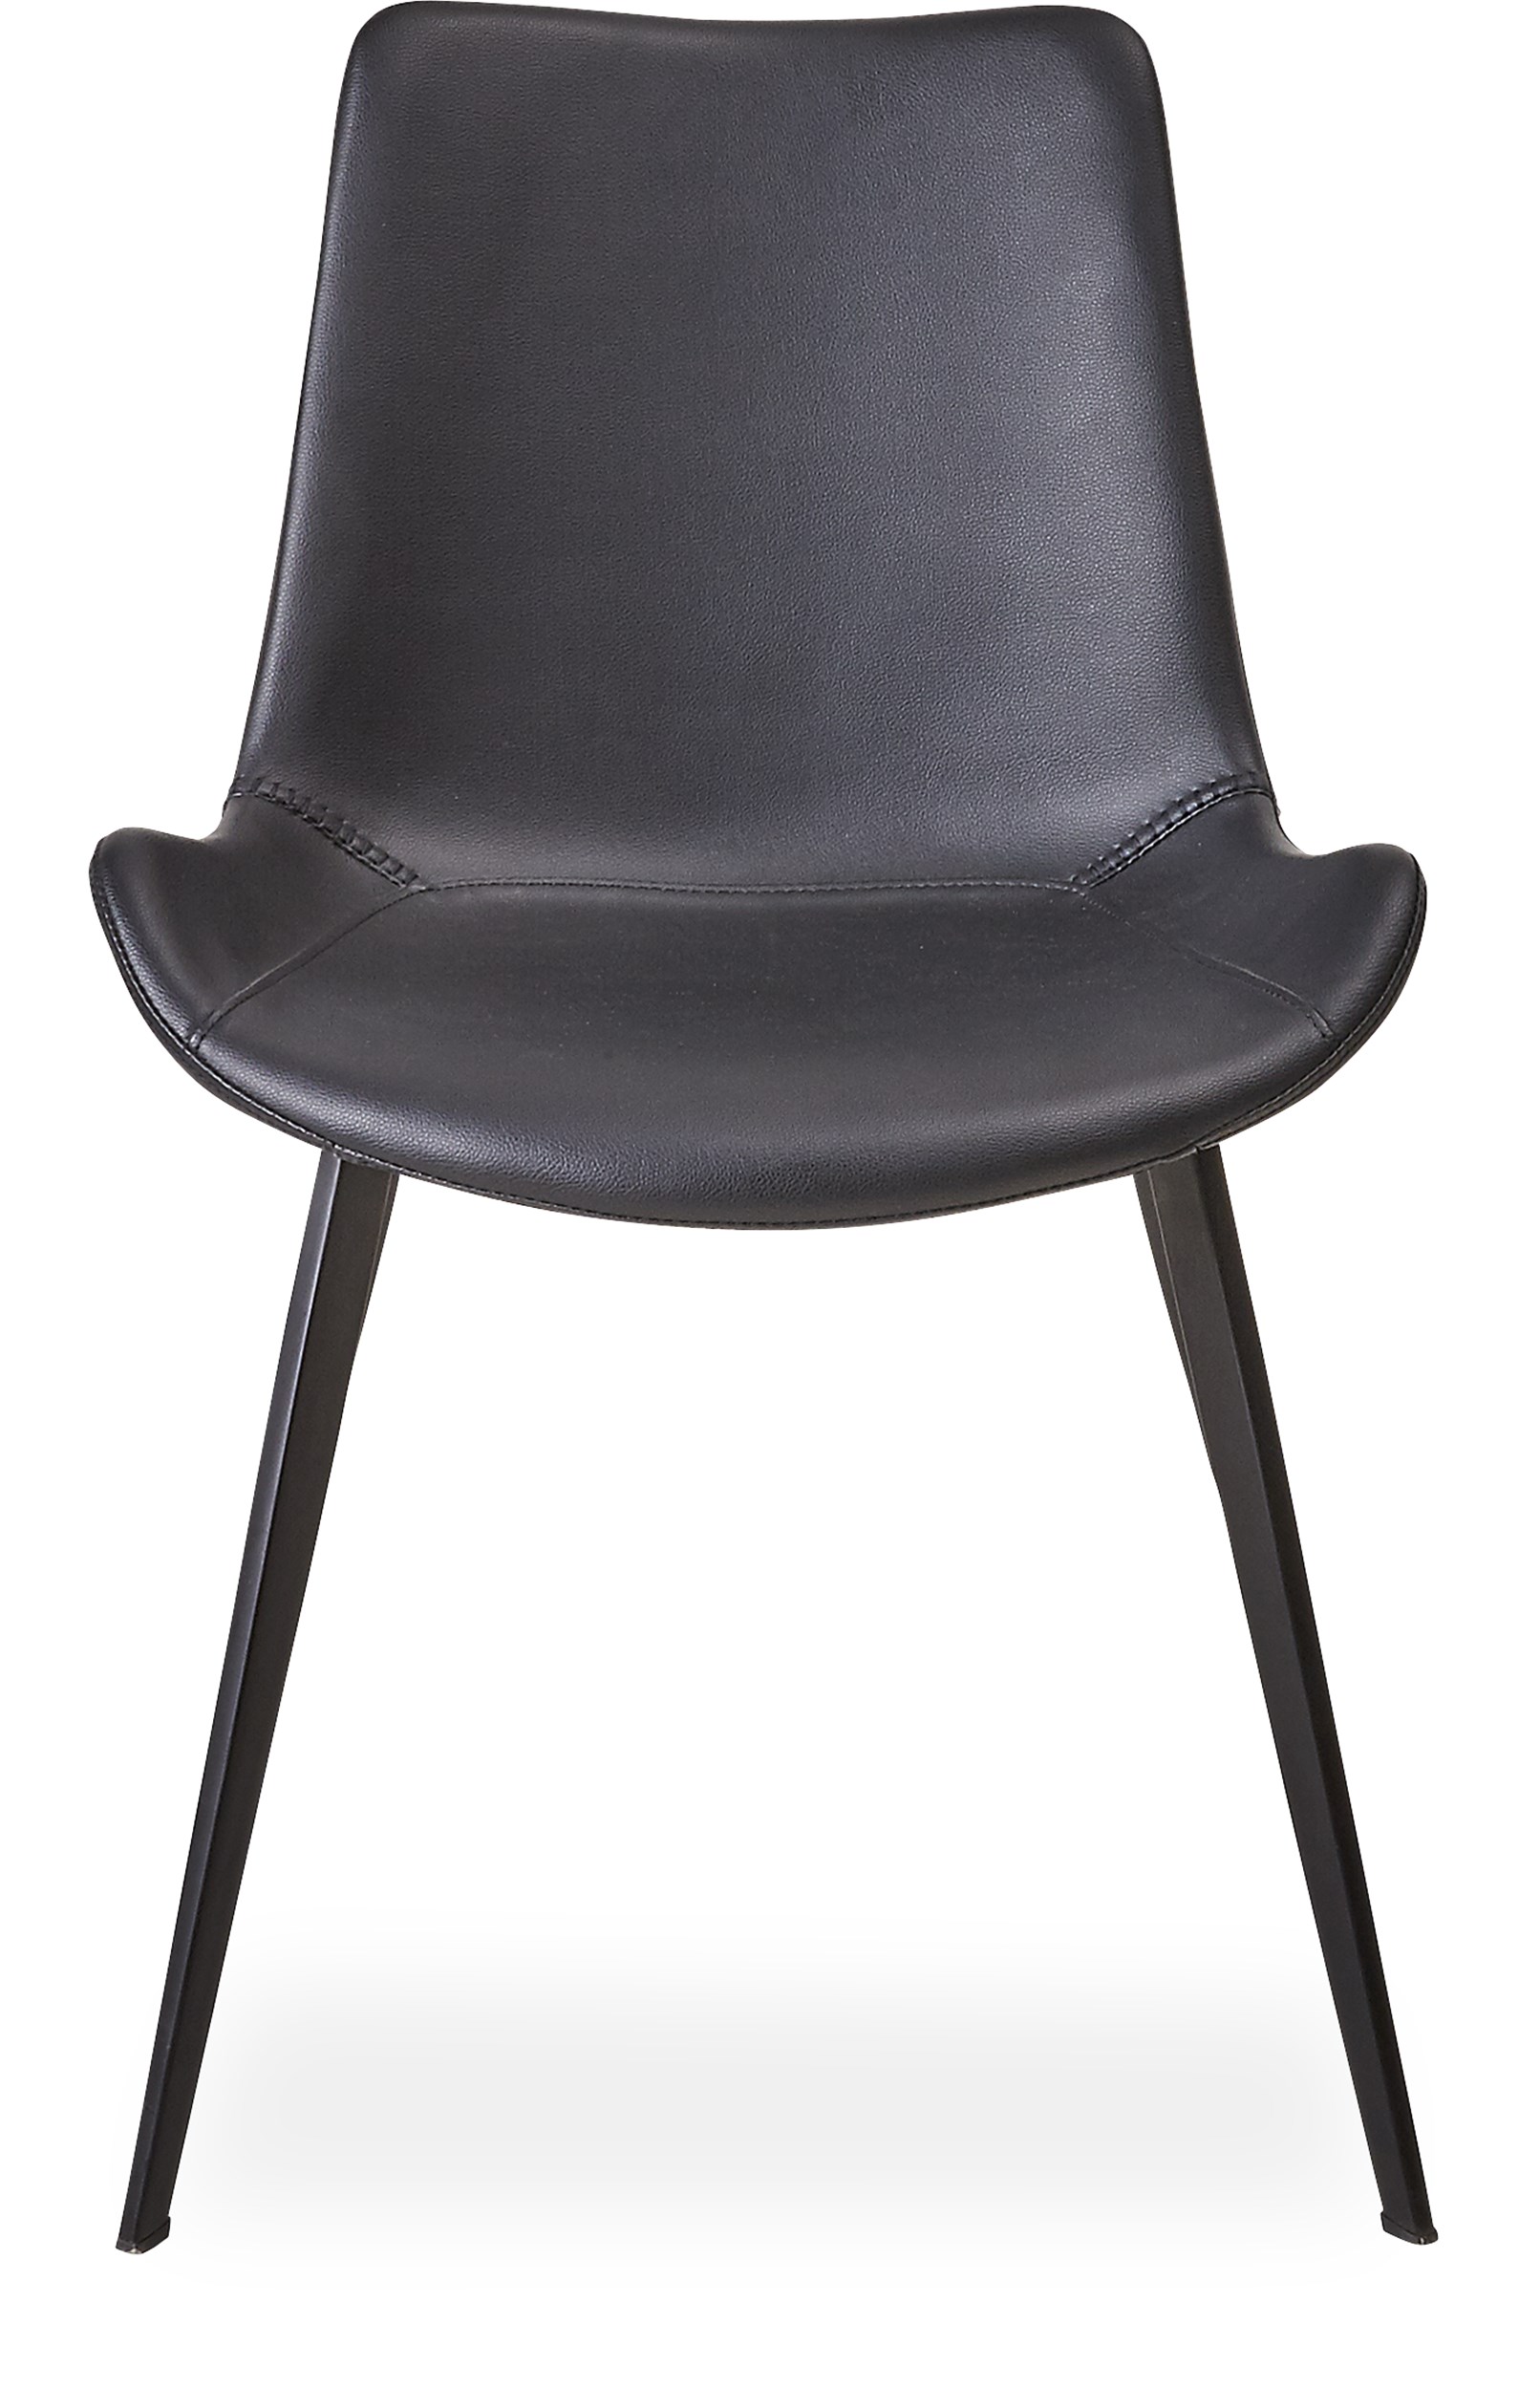 Hype Spisebordsstol - Sæde i sort kunstlæder og ben i sortlakeret metal